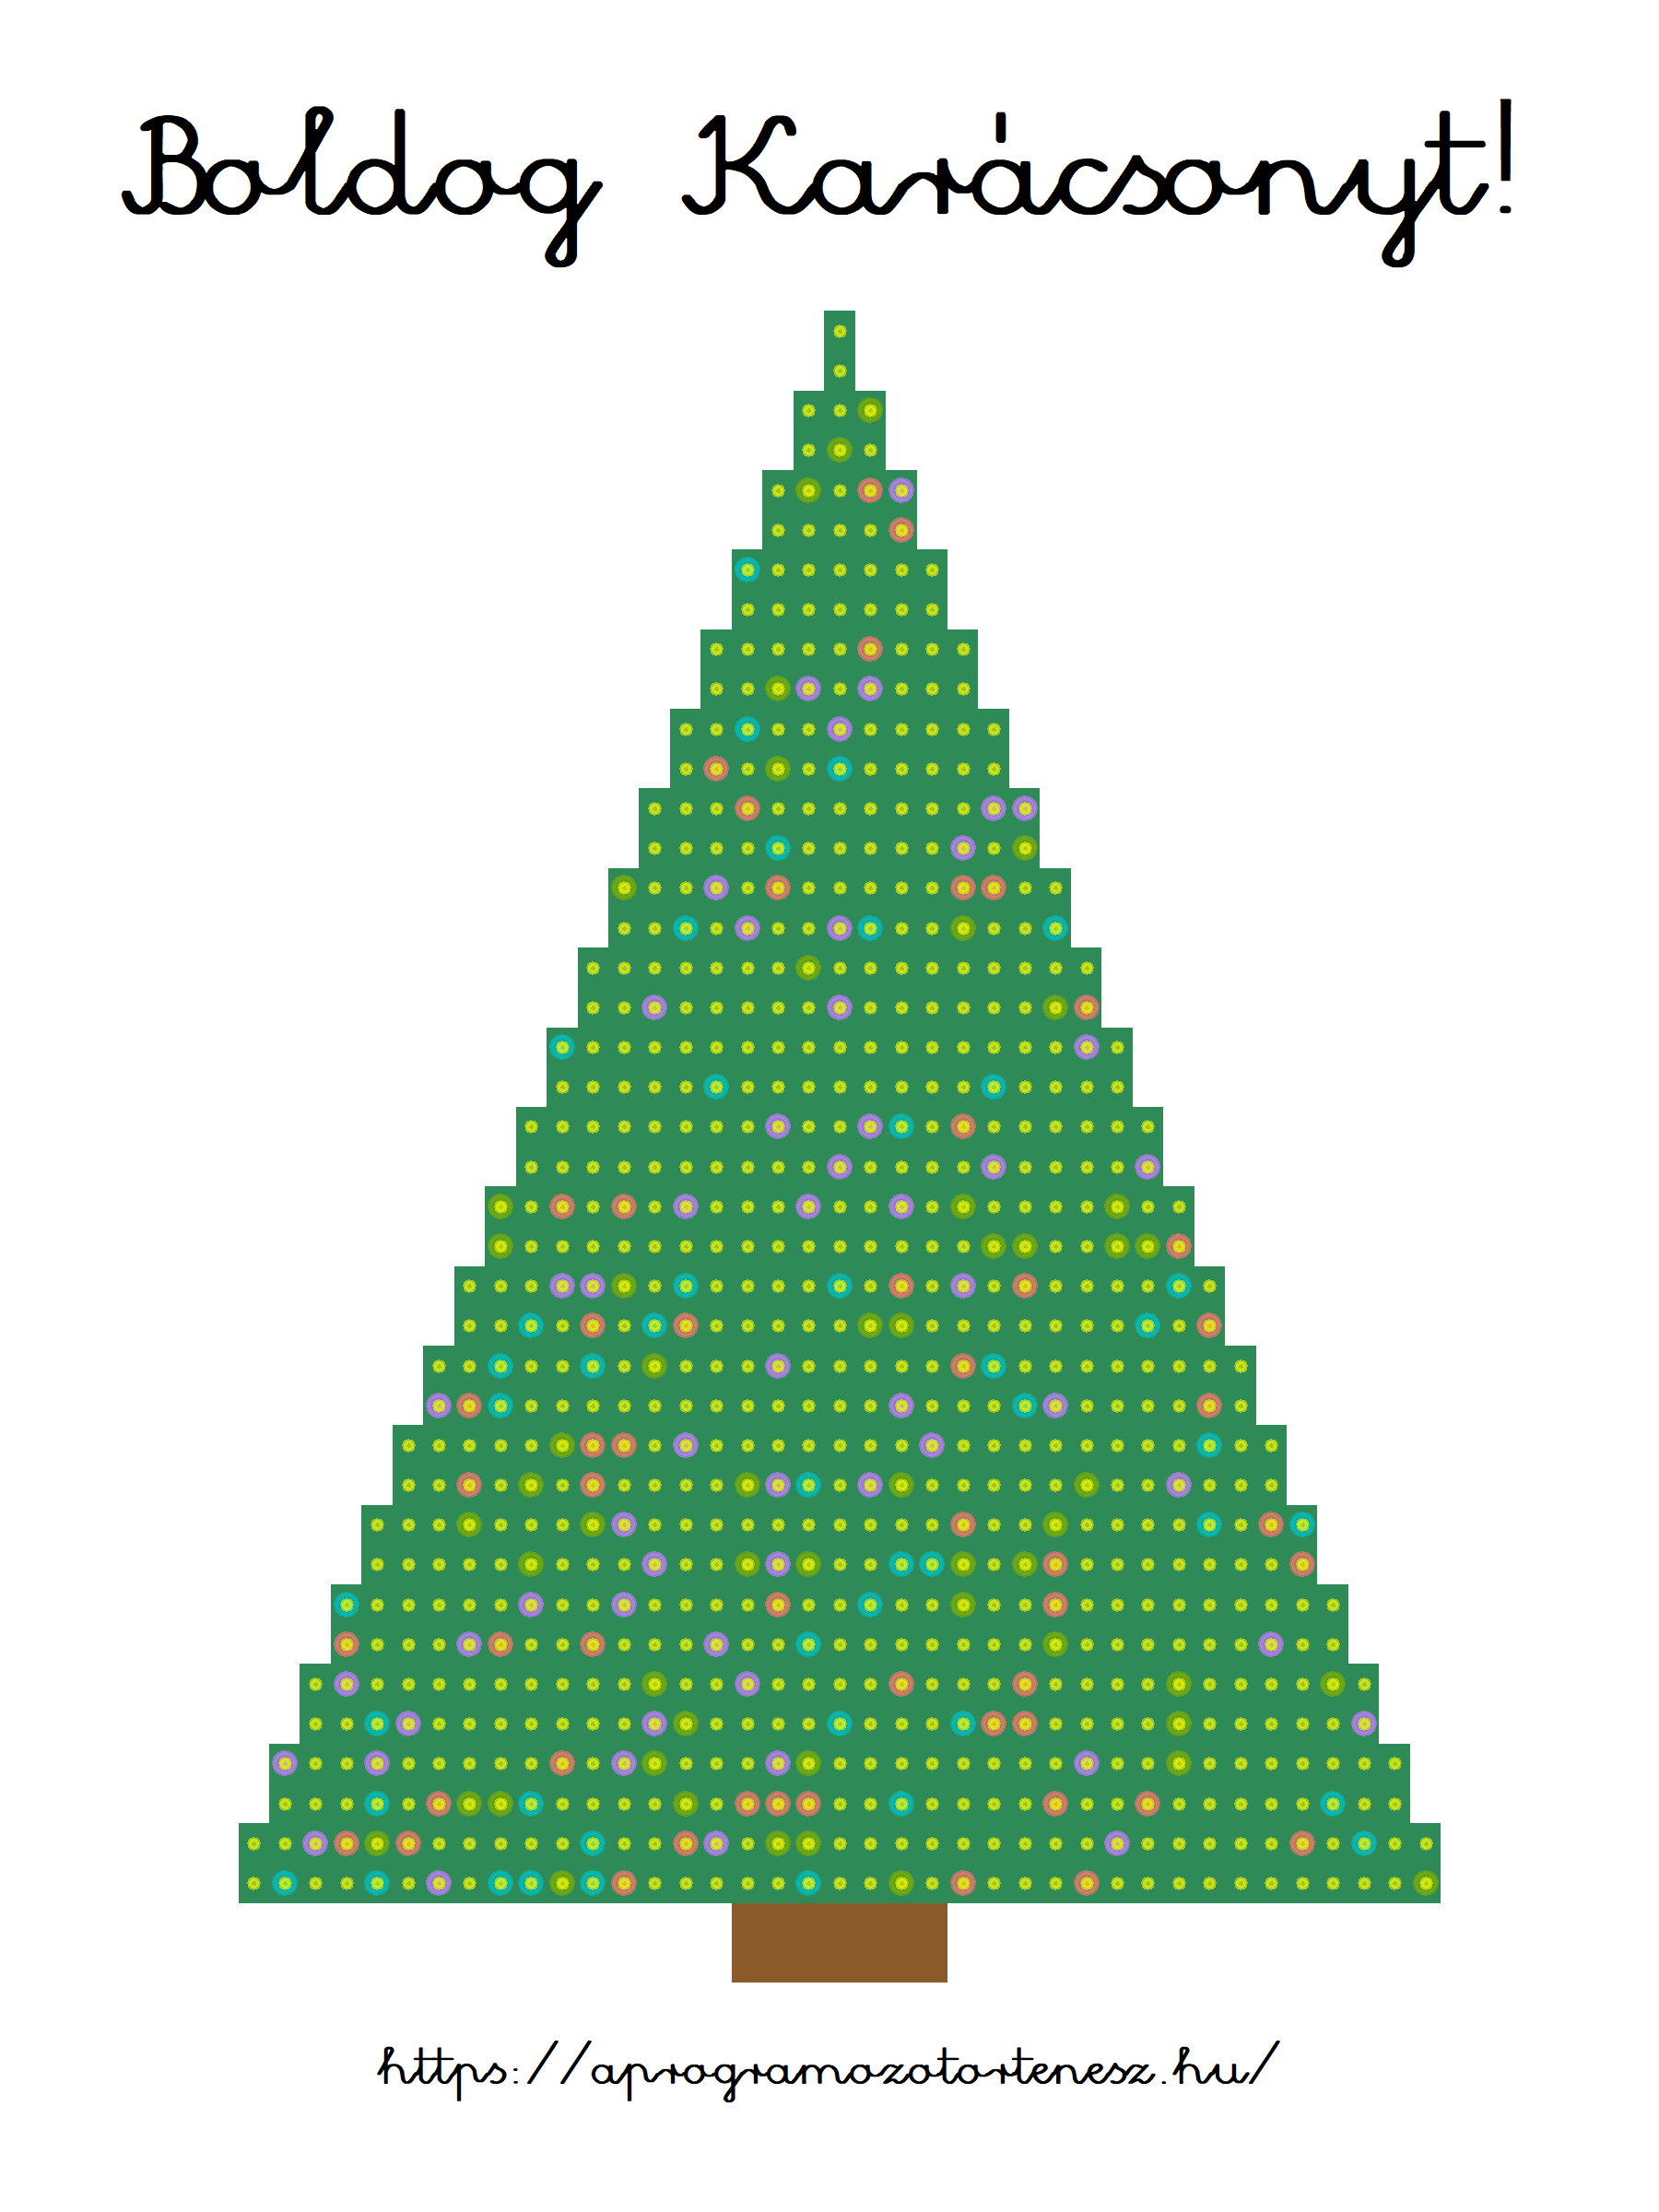 Az elkészült karácsonyfa-diagram